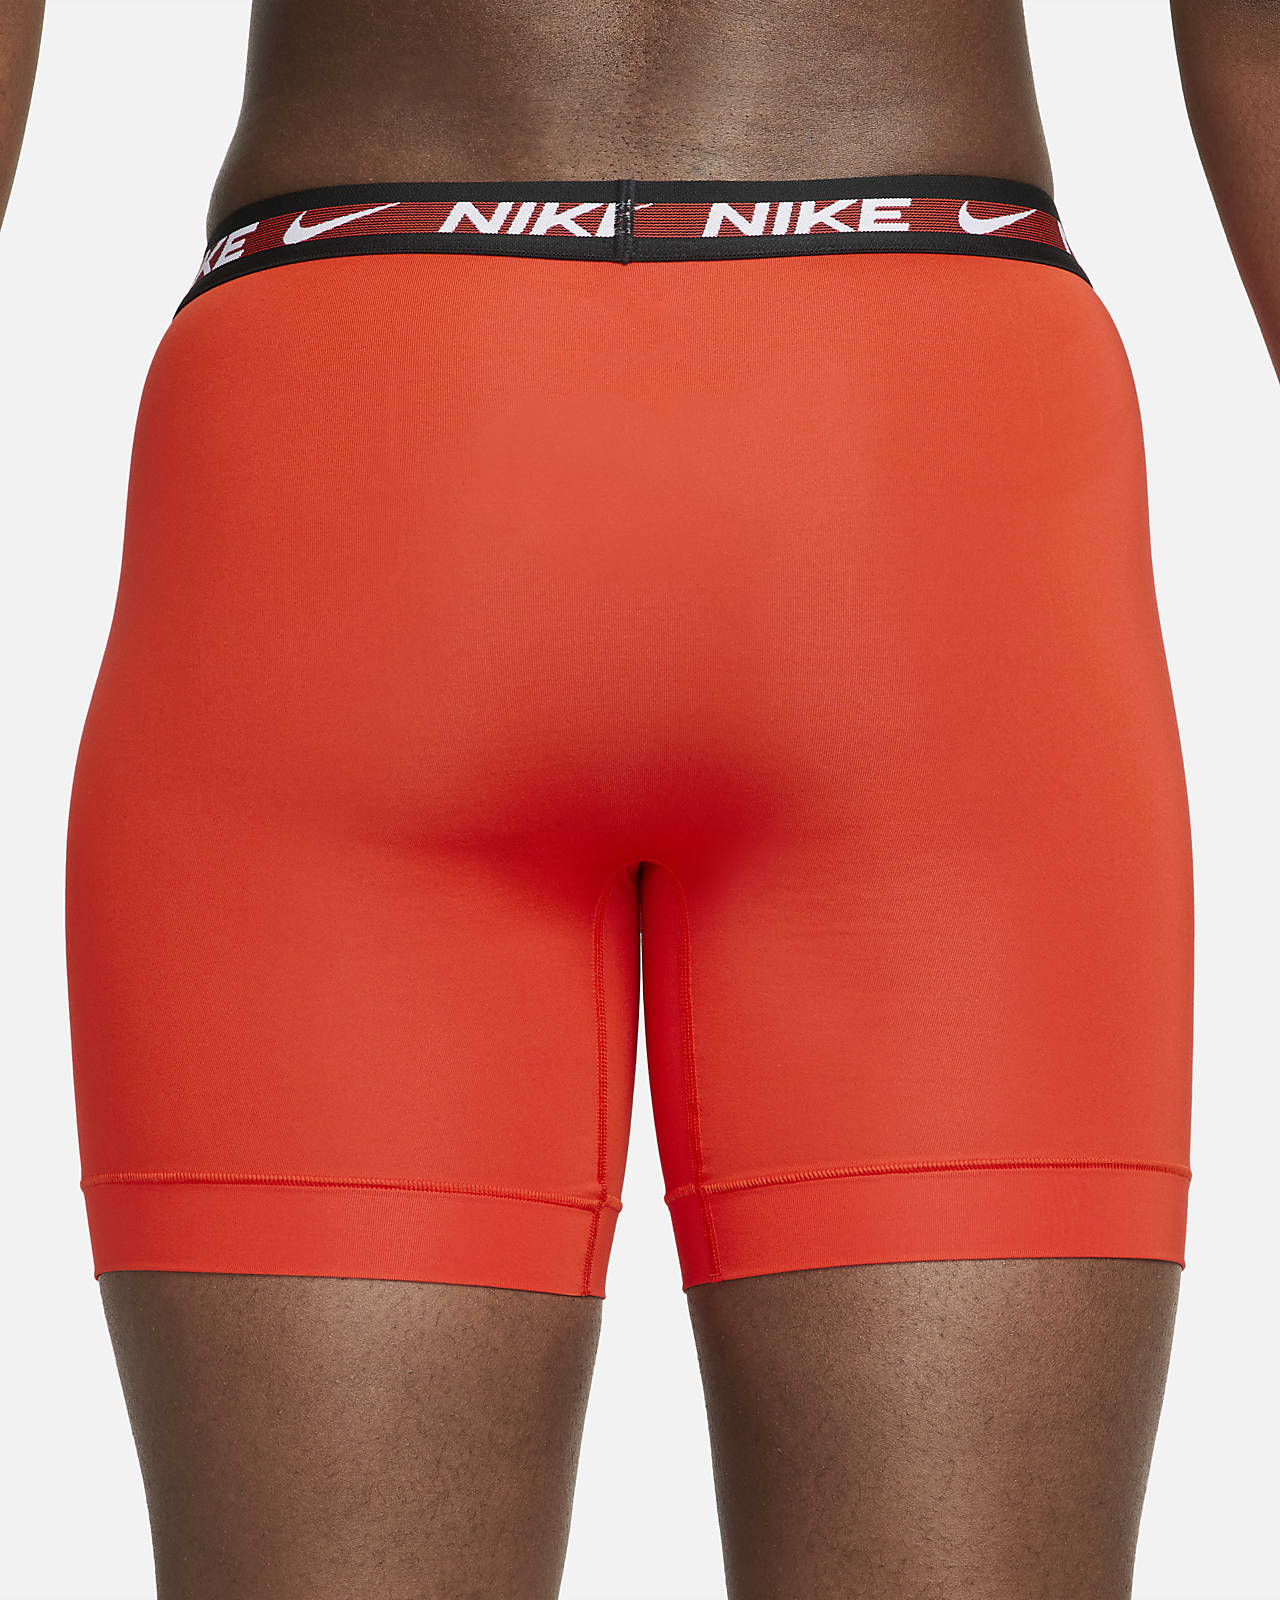 Vugge fodspor Tranquility Nike Dri-FIT Ultra-Stretch Micro Men's Boxer Briefs (3-Pack). Nike.com